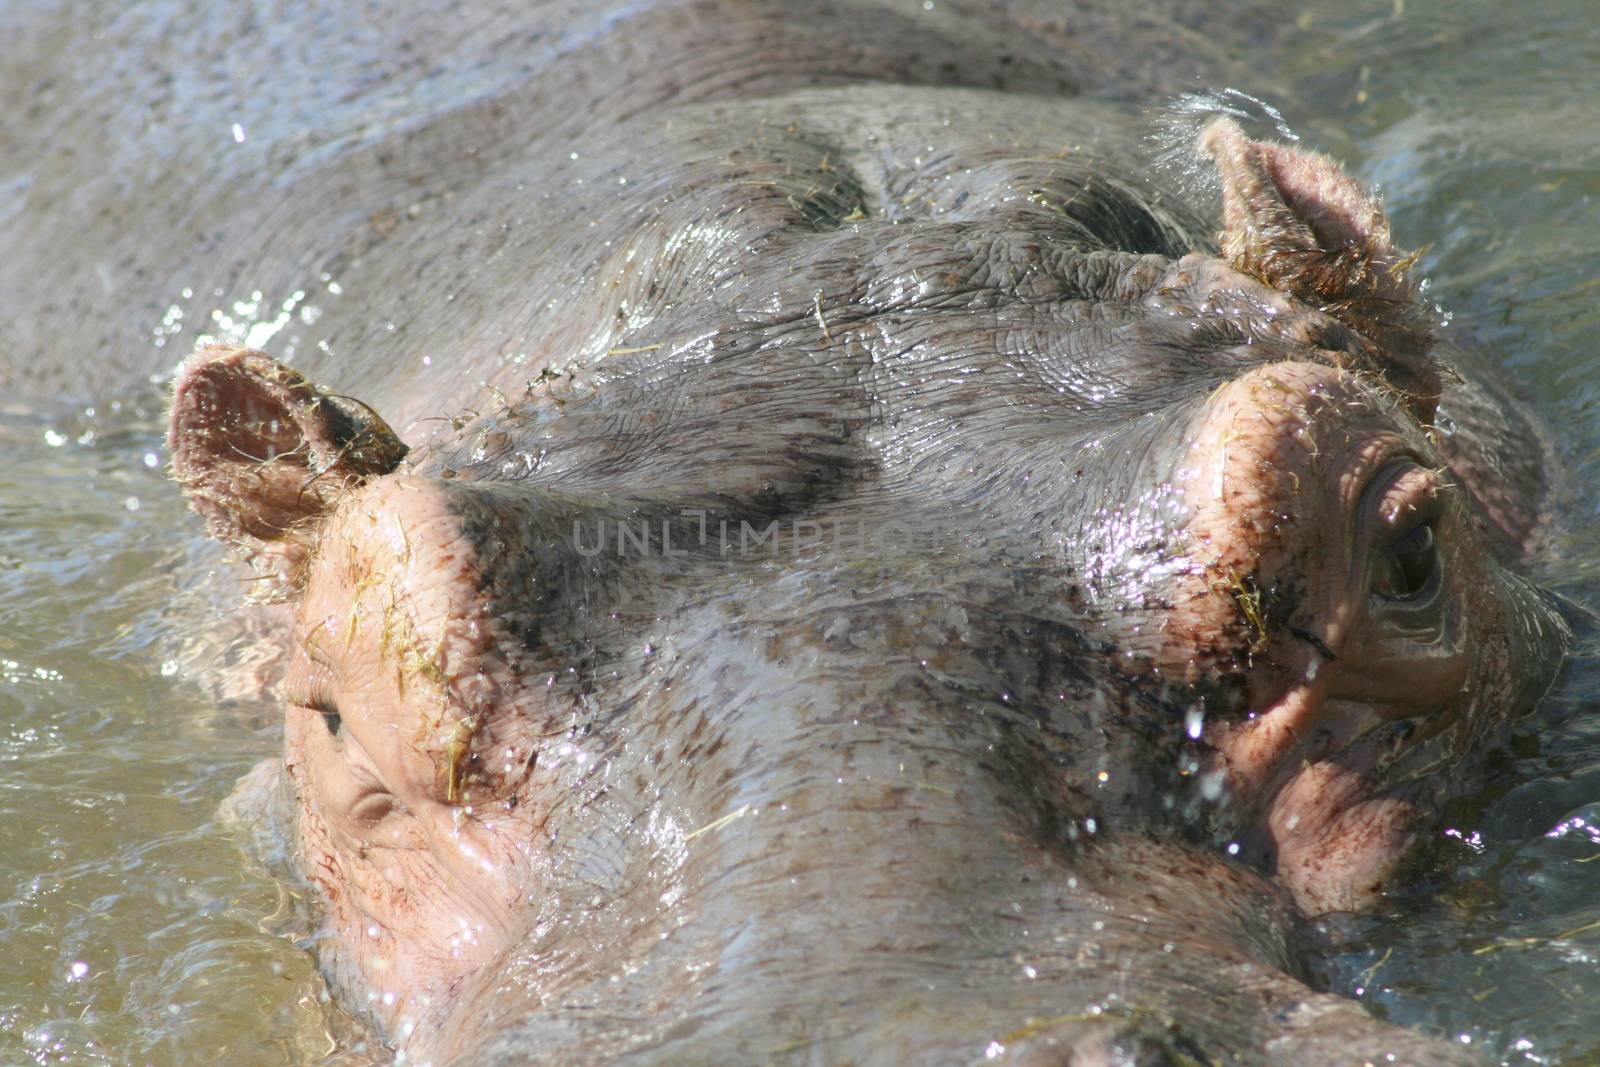 Portrait shot of a hippopotamus in water    Portr�taufnahme eines Flusspferdes im Wasser